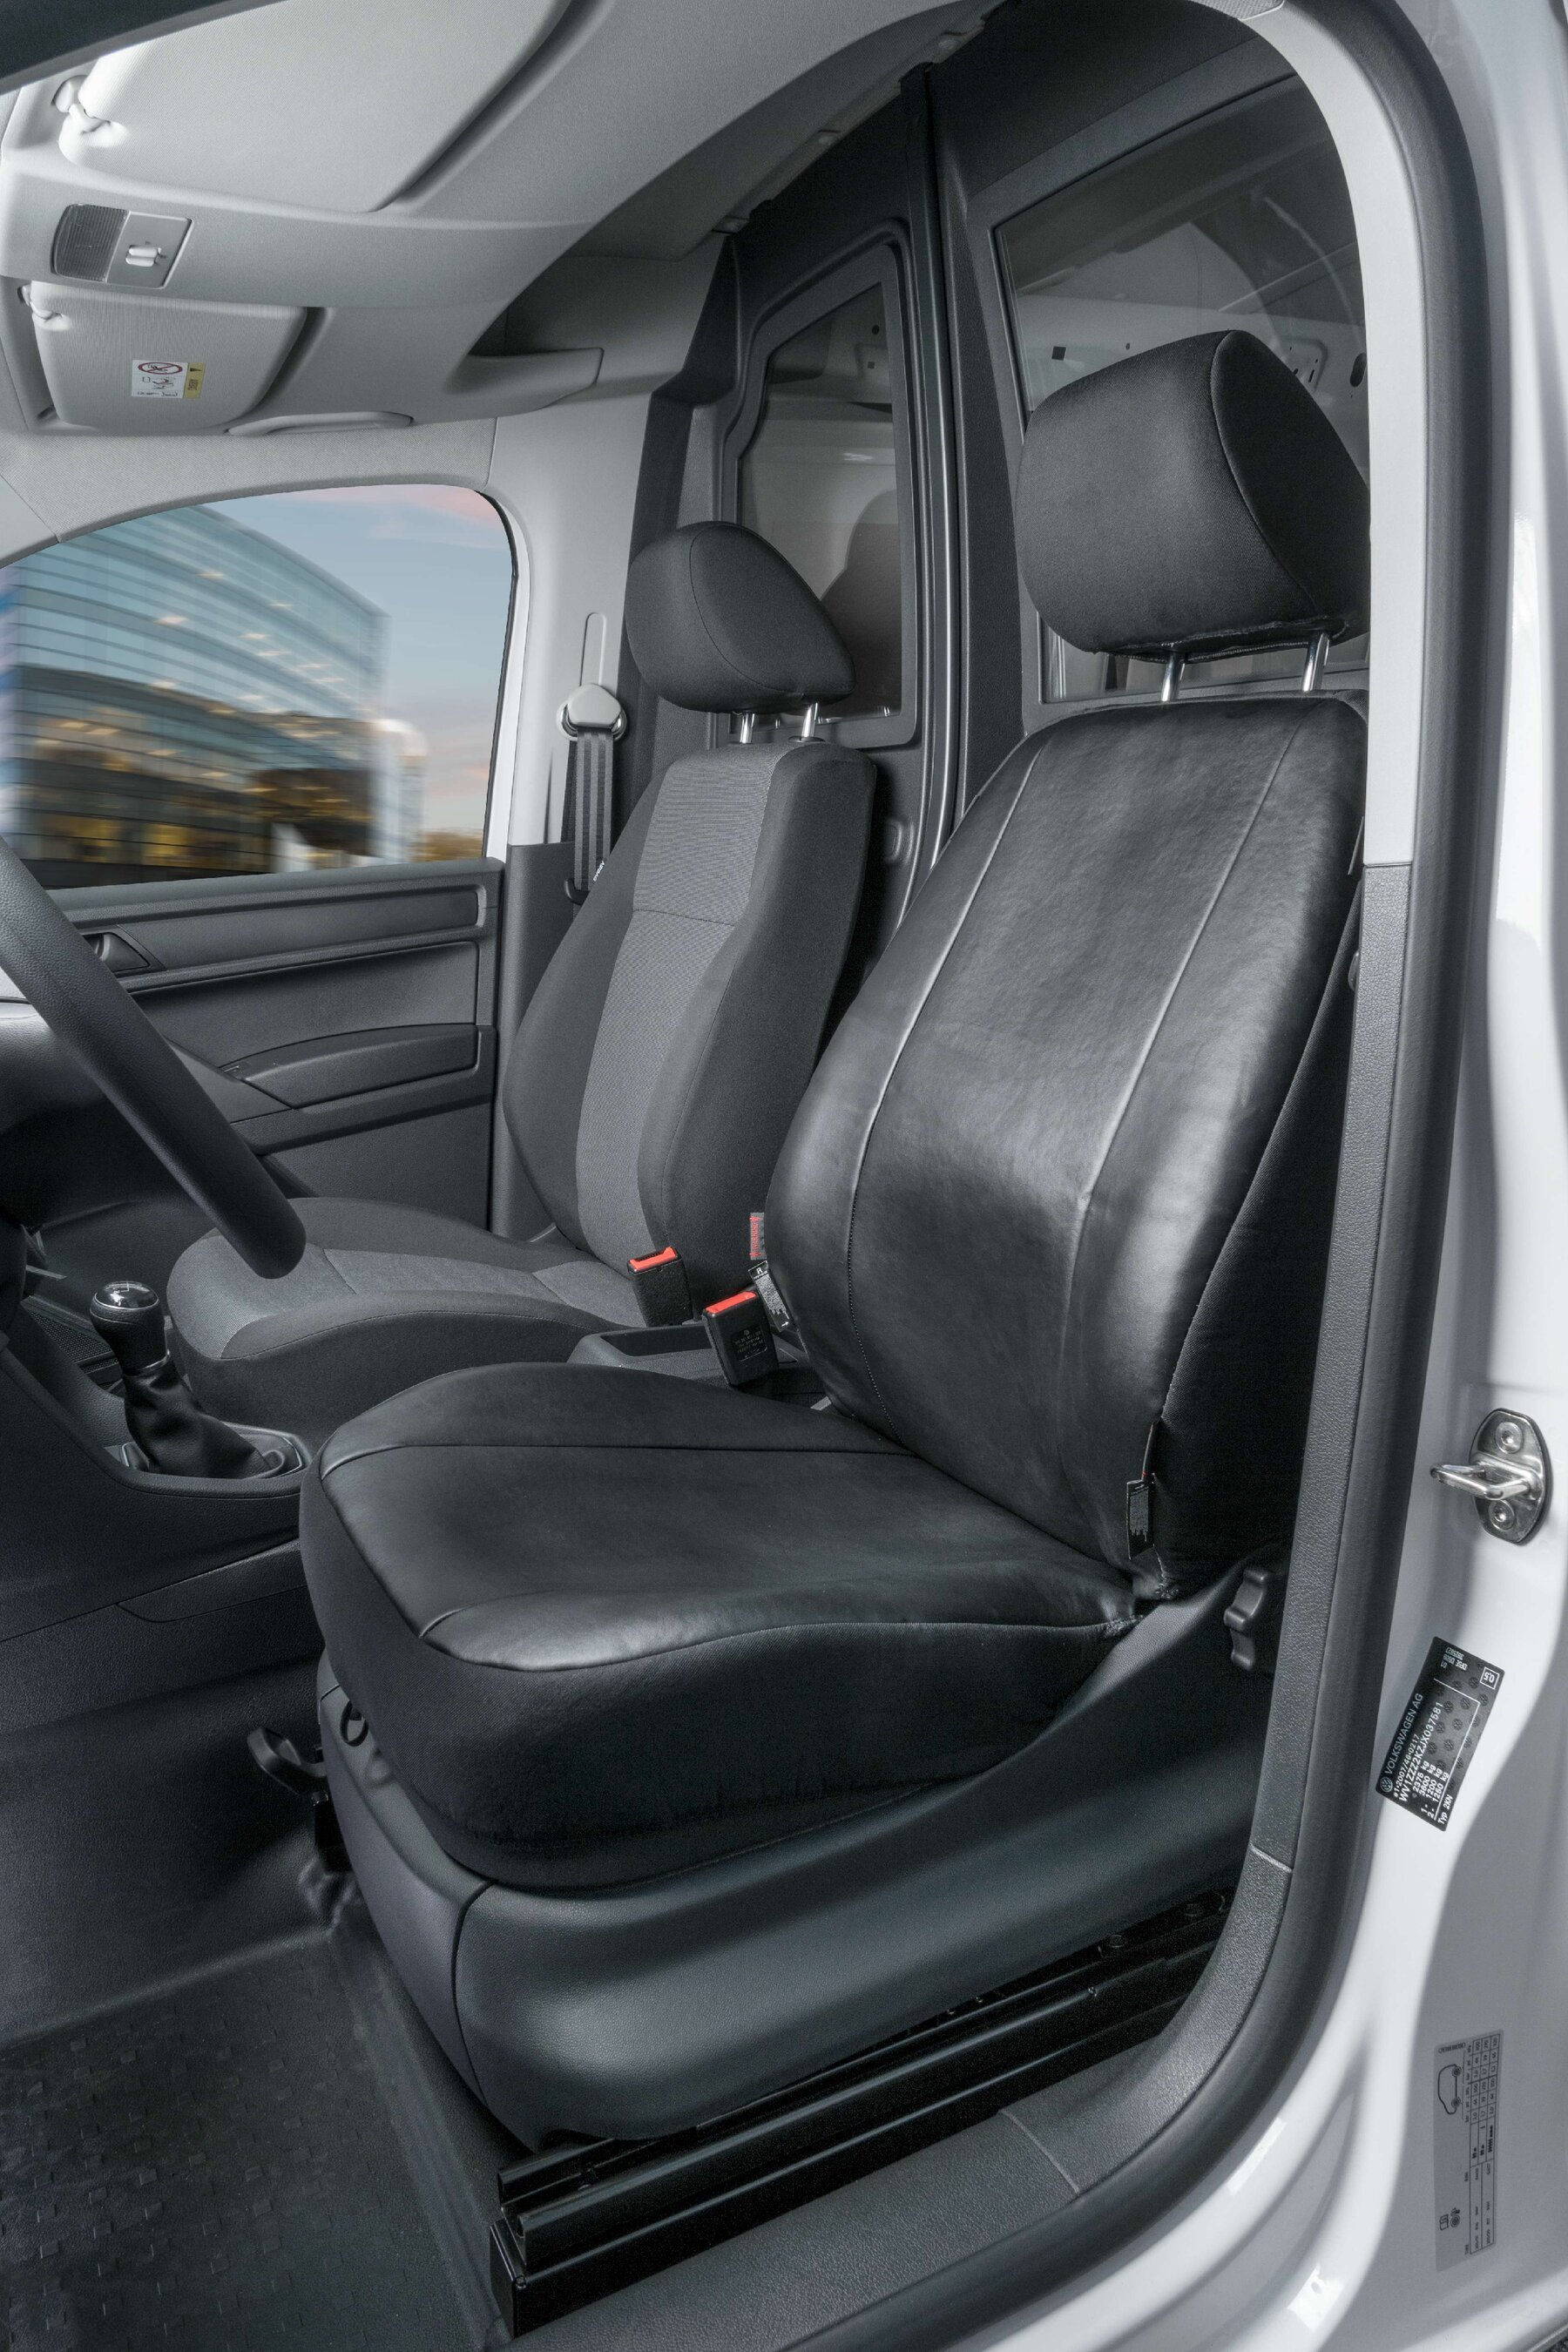 Autostoelhoes Transporter Fit Kunstleer antraciet geschikt voor VW Caddy, Enkele zetel front